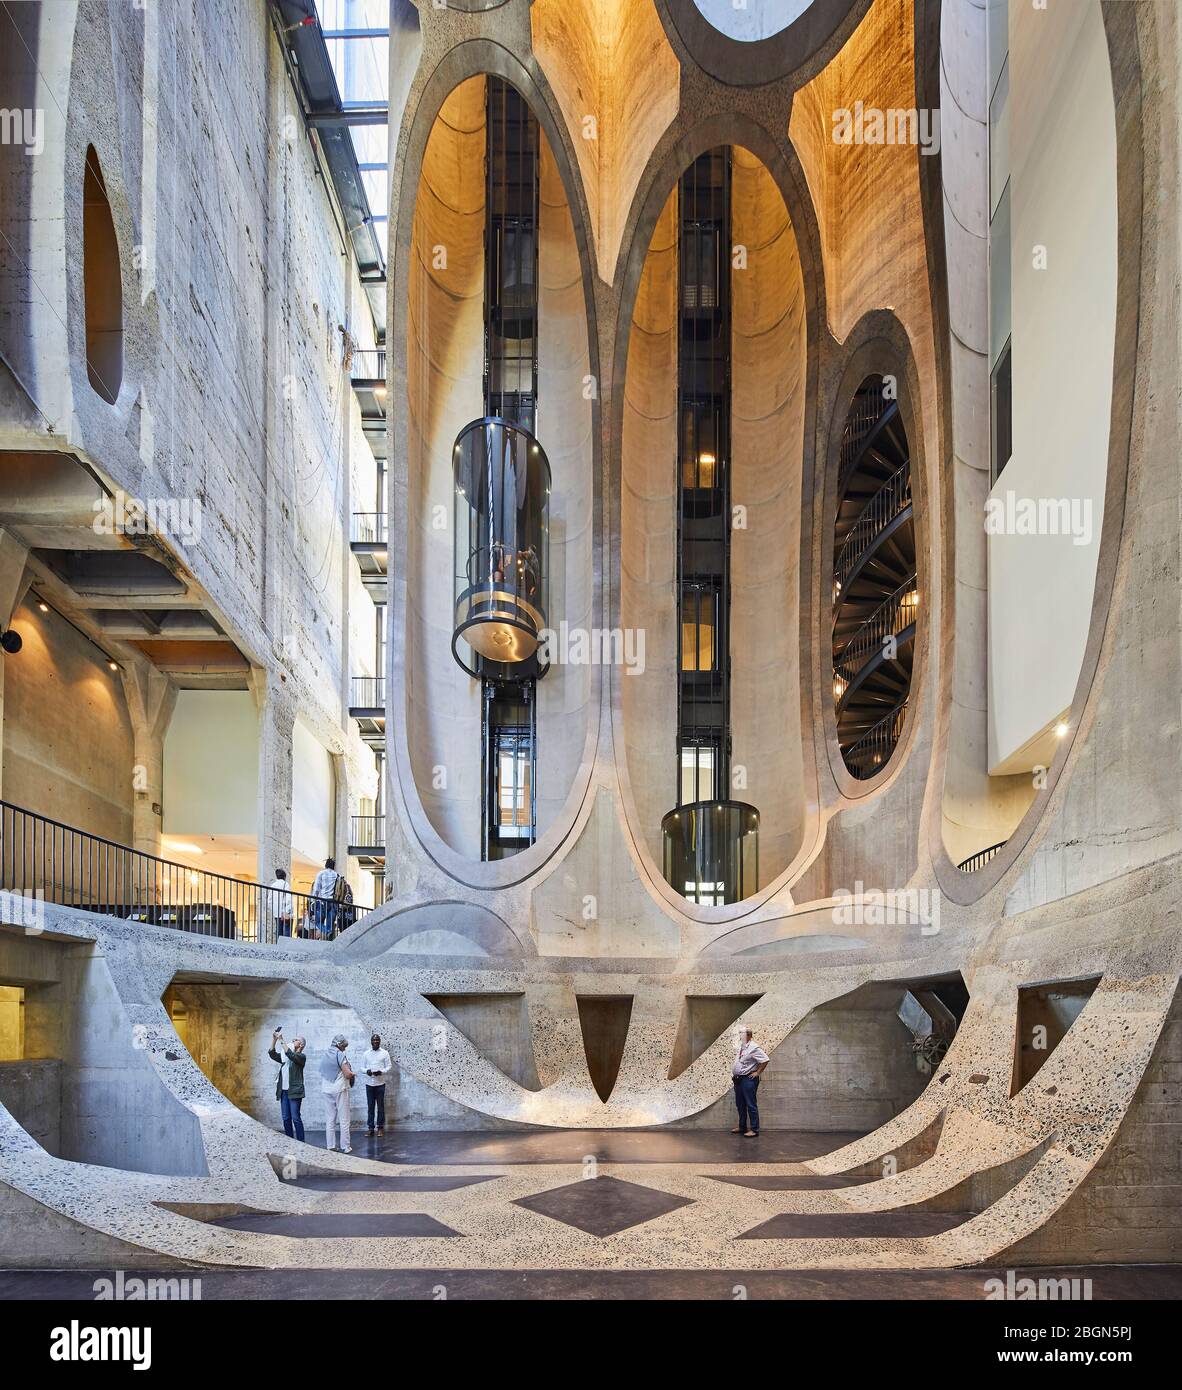 Atrio centrale con tubi in cemento che espongono la struttura. Zeitz MOCAA, Città del Capo, Sudafrica. Architetto: Heatherwick Studio, 2017. Foto Stock